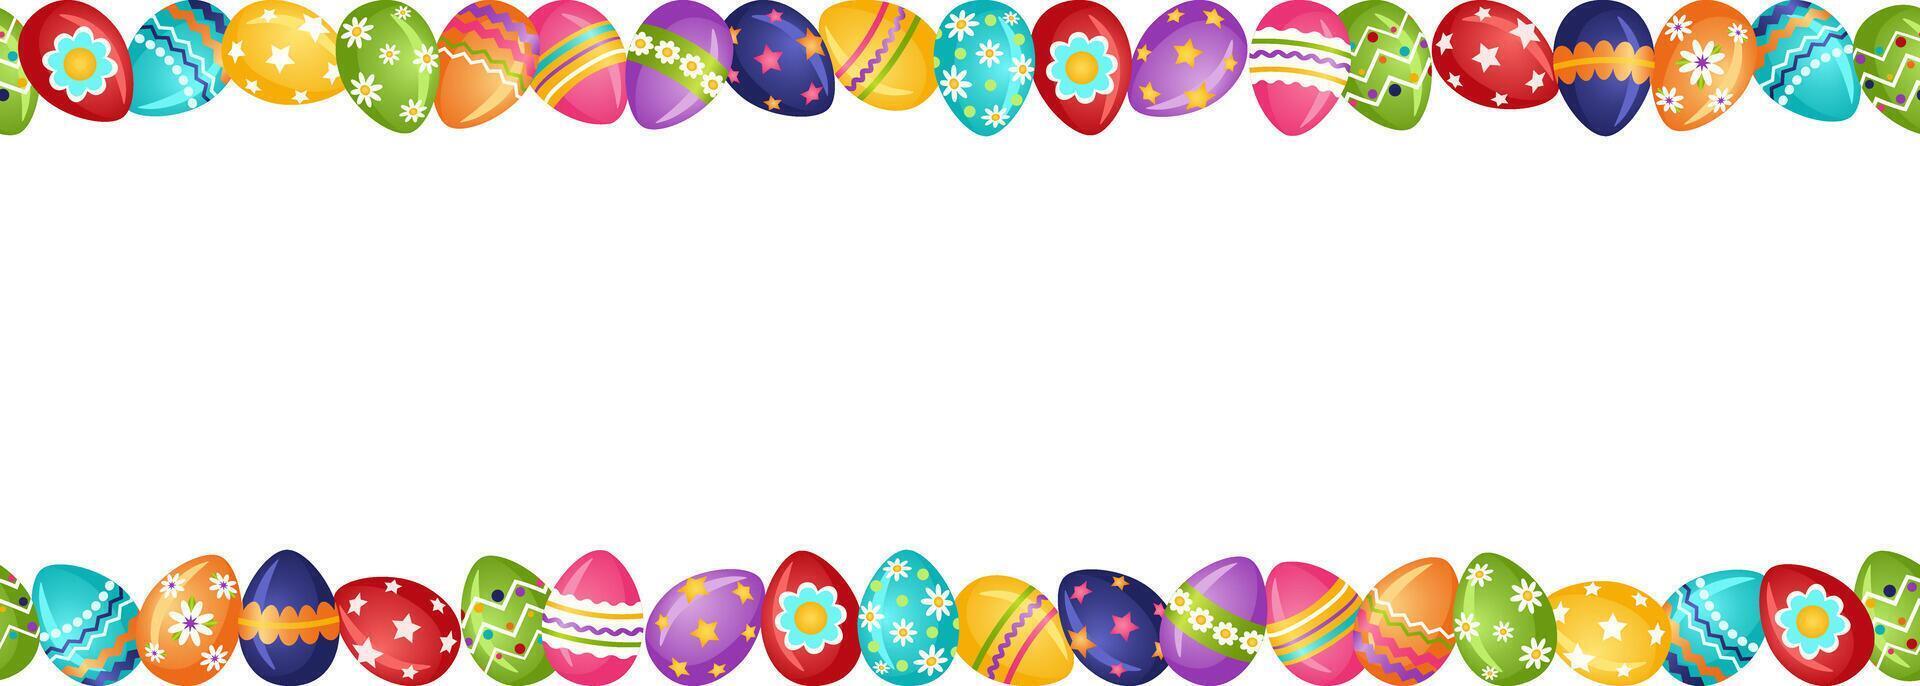 telaio fatto di colorato luminosa Pasqua uova. orizzontale senza soluzione di continuità Pasqua arredamento con dipinto uova. vettore illustrazione.